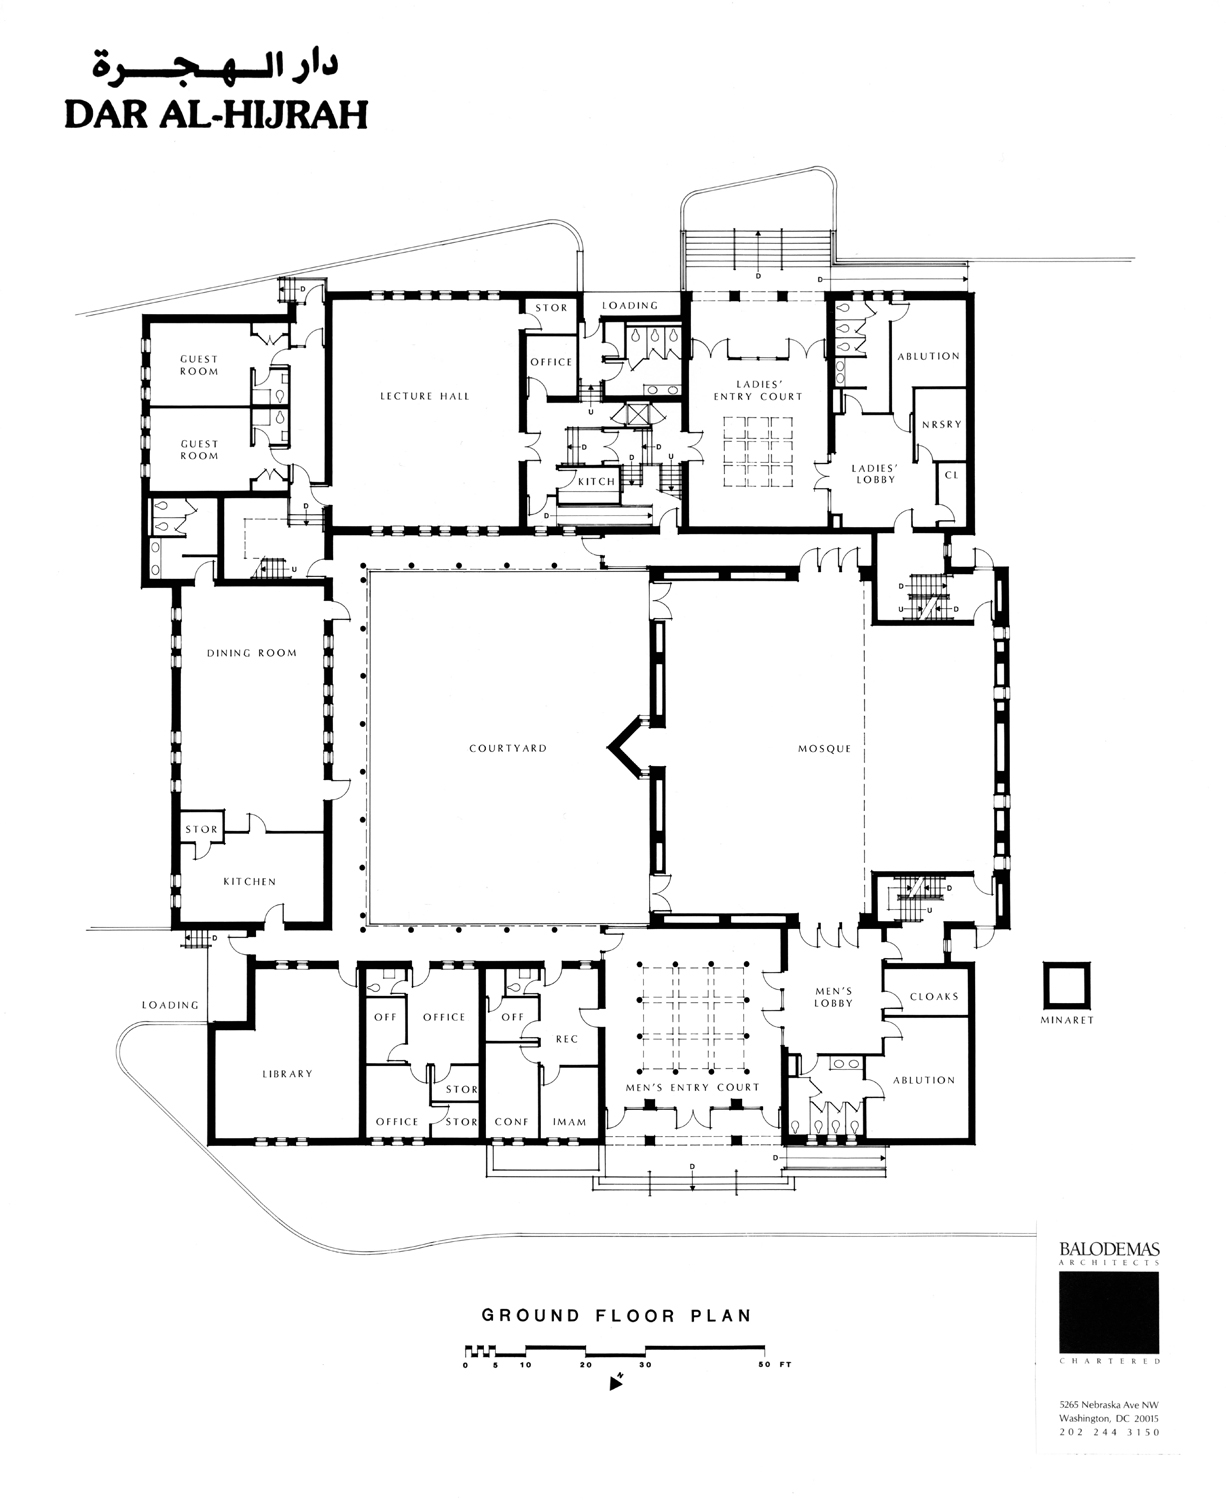 Dar Al-Hijrah Islamic Center - Ground floor plan